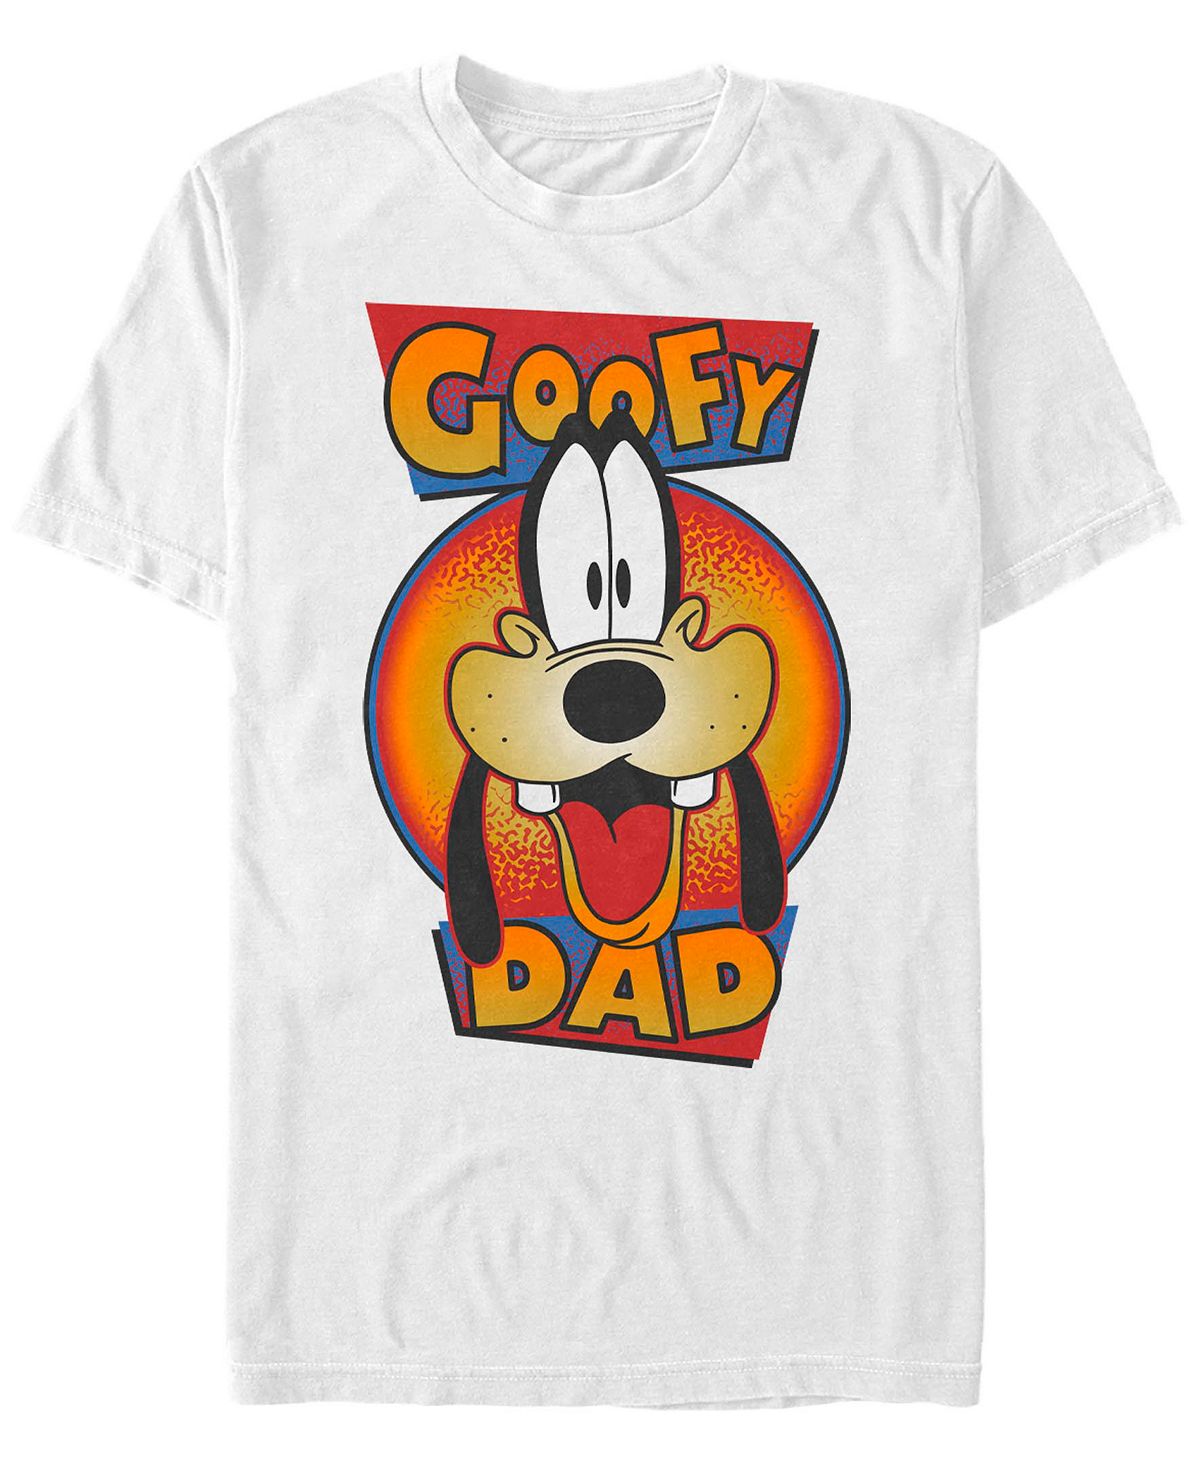 Мужская футболка с коротким рукавом goofy dad Fifth Sun, белый